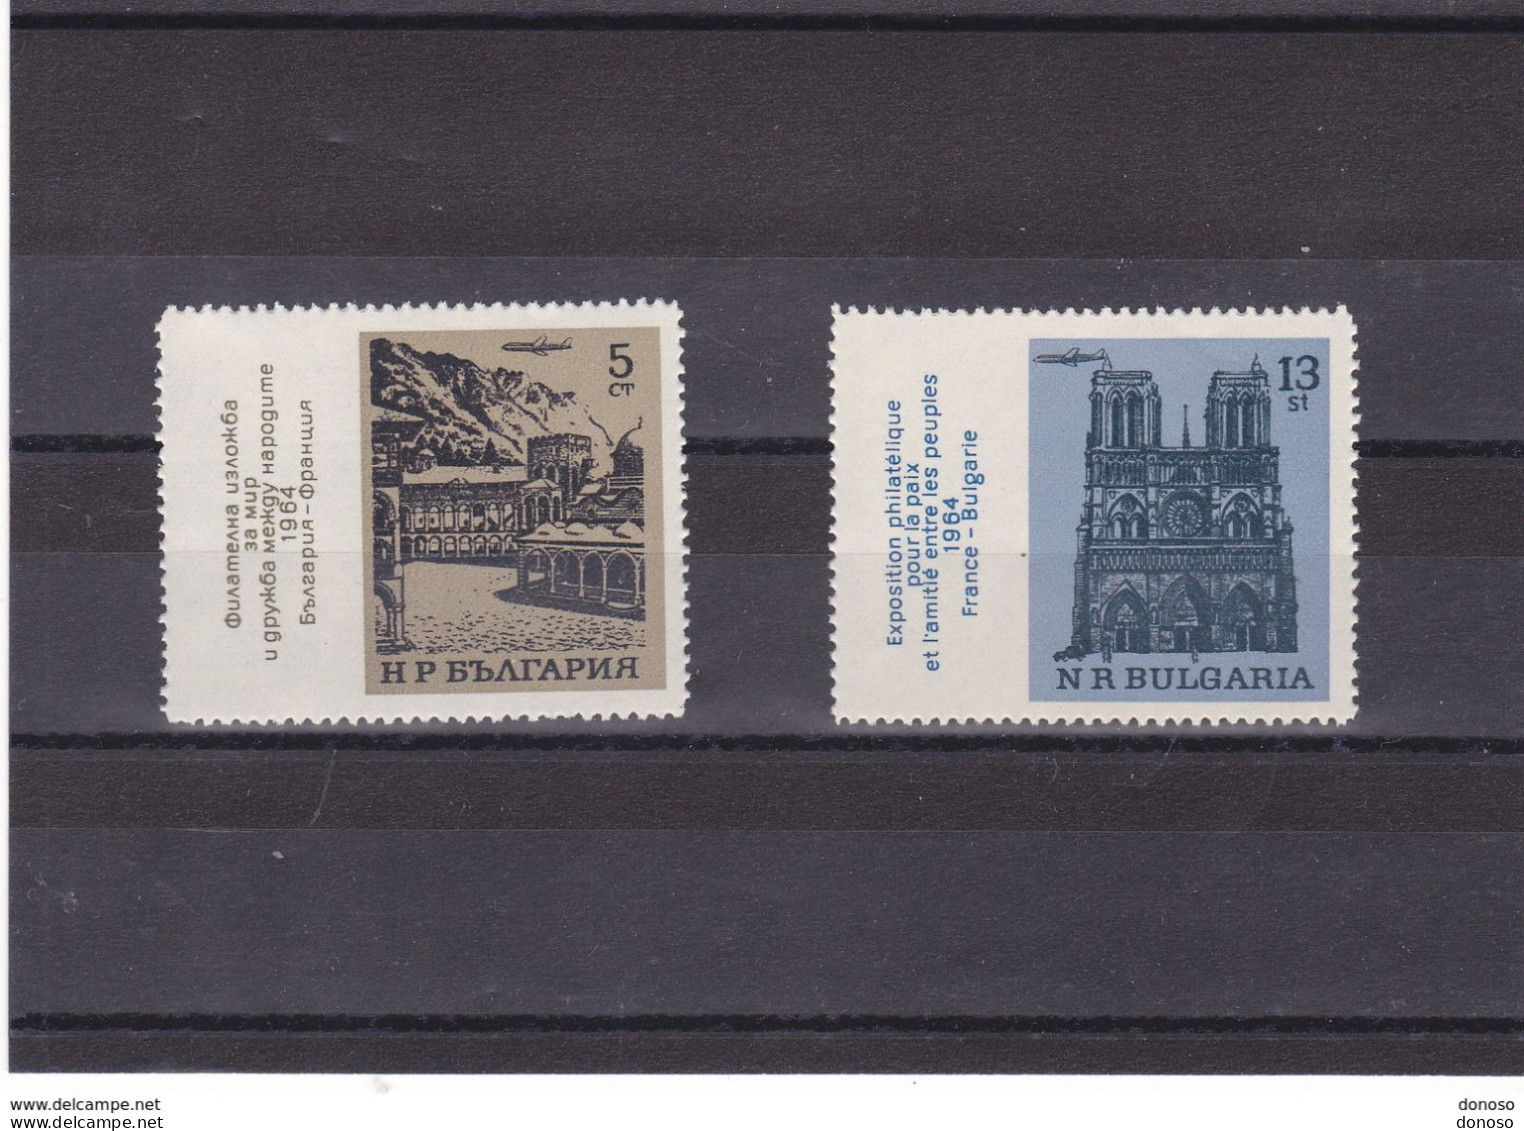 BULGARIE 1964 Monastère De Rila, Notre Dame De Paris Yvert 1293-1294, Michel 1500-1501 NEUF** MNH - Ungebraucht